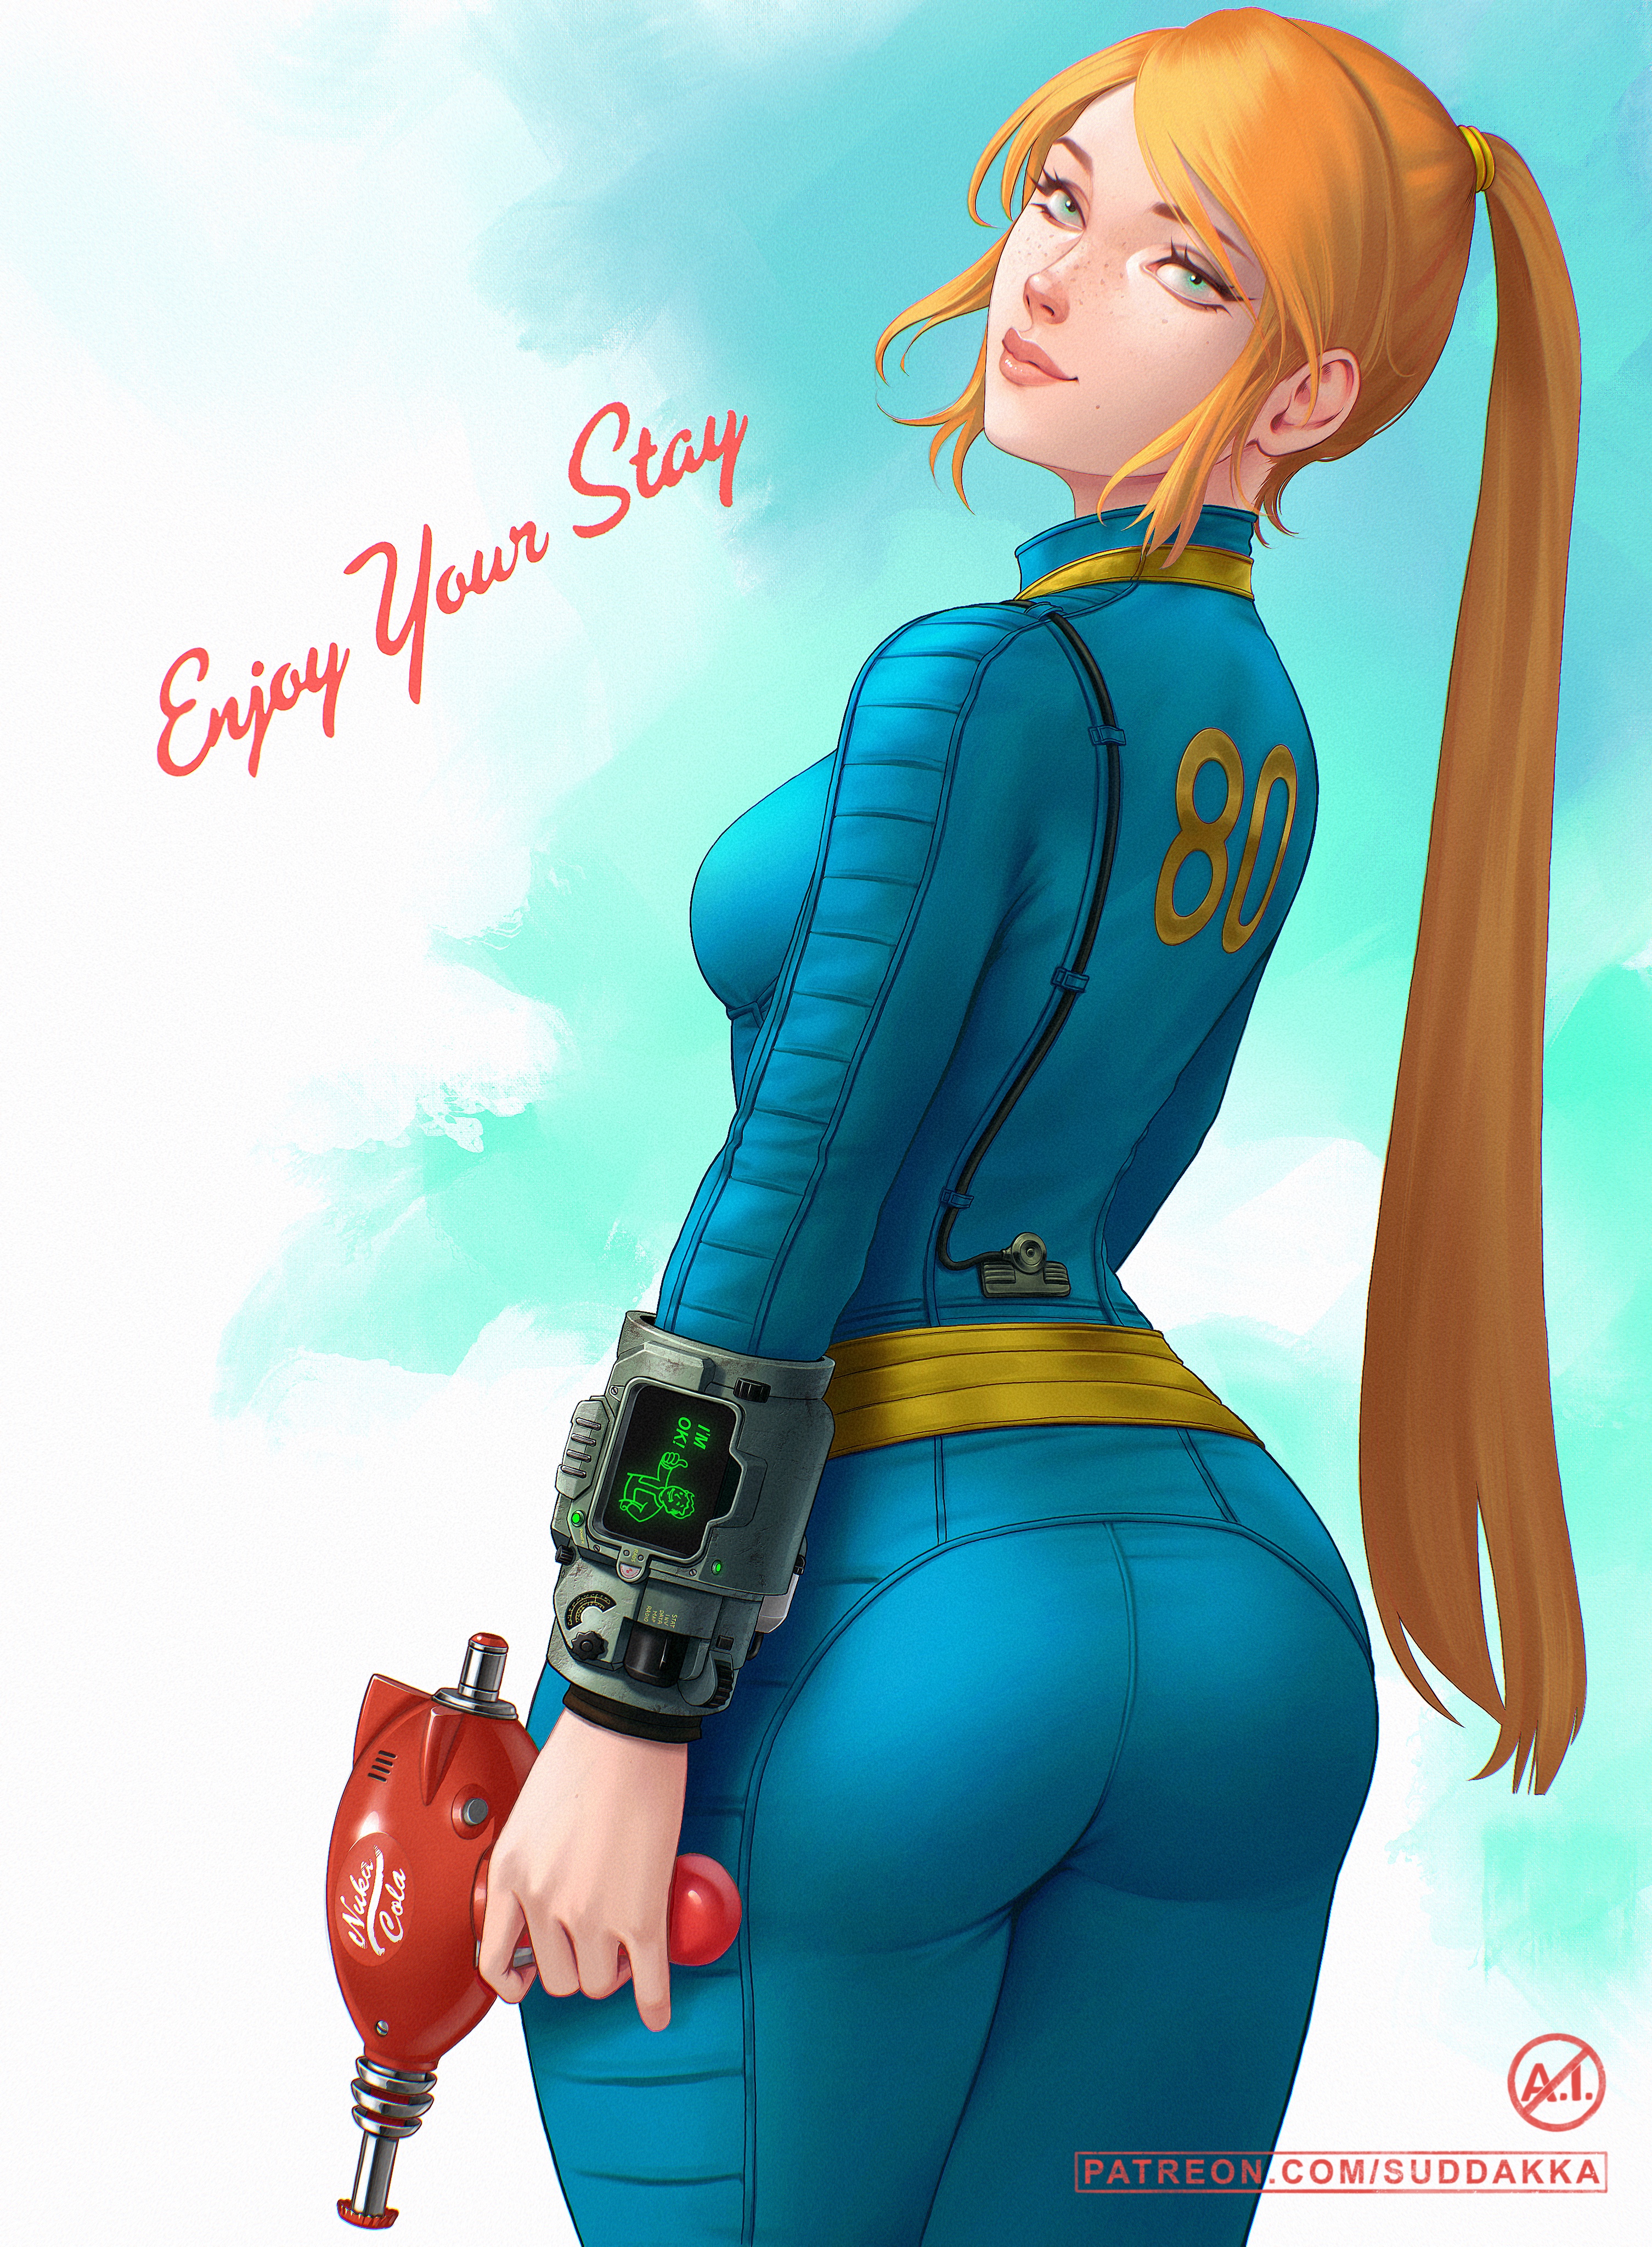 Video Game Art Fallout Vault Girl Fictional Character Vault Dweller Video Game Girls Suddakka 3011x4096